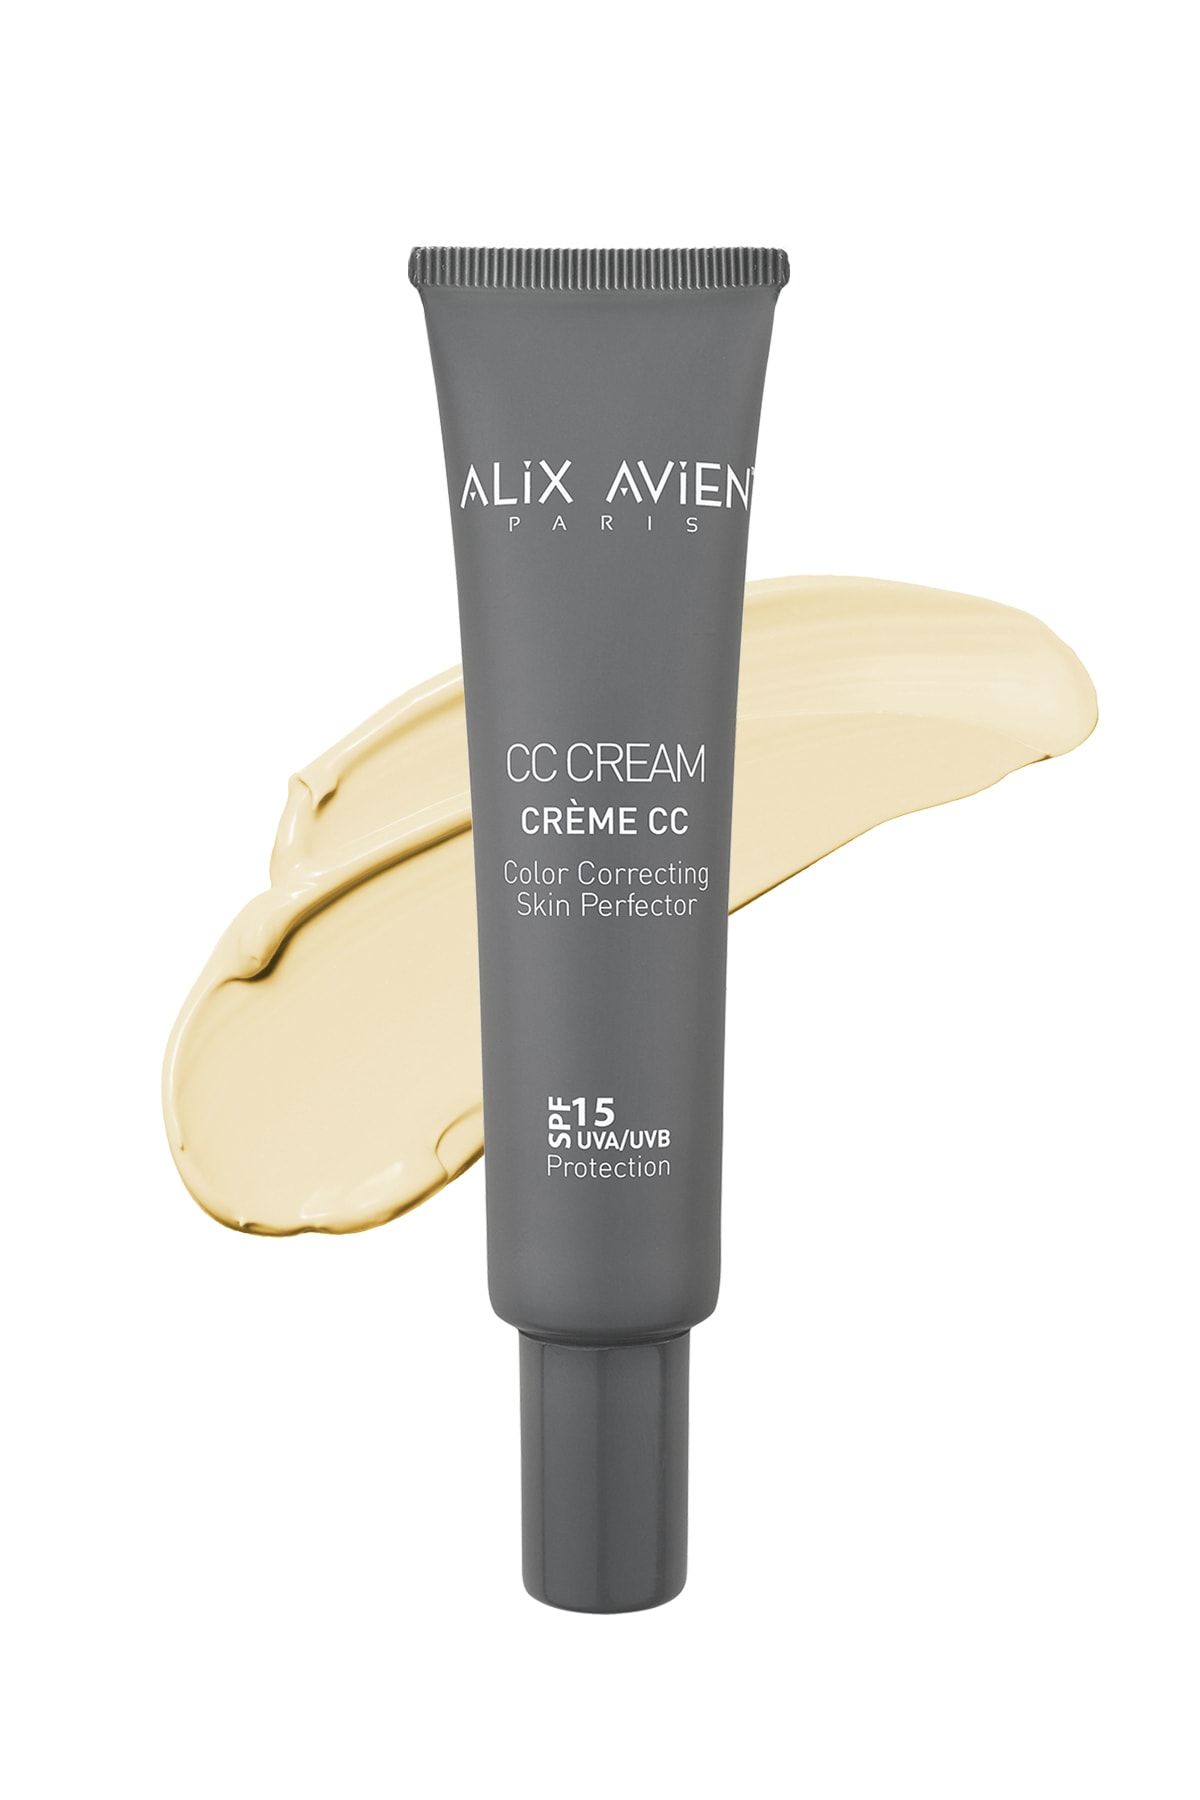 Alix Avien Cc Krem Renk Düzenleyici Sarı - Cc Cream Yellow Spf 15 Uvb/uva - 40 ml